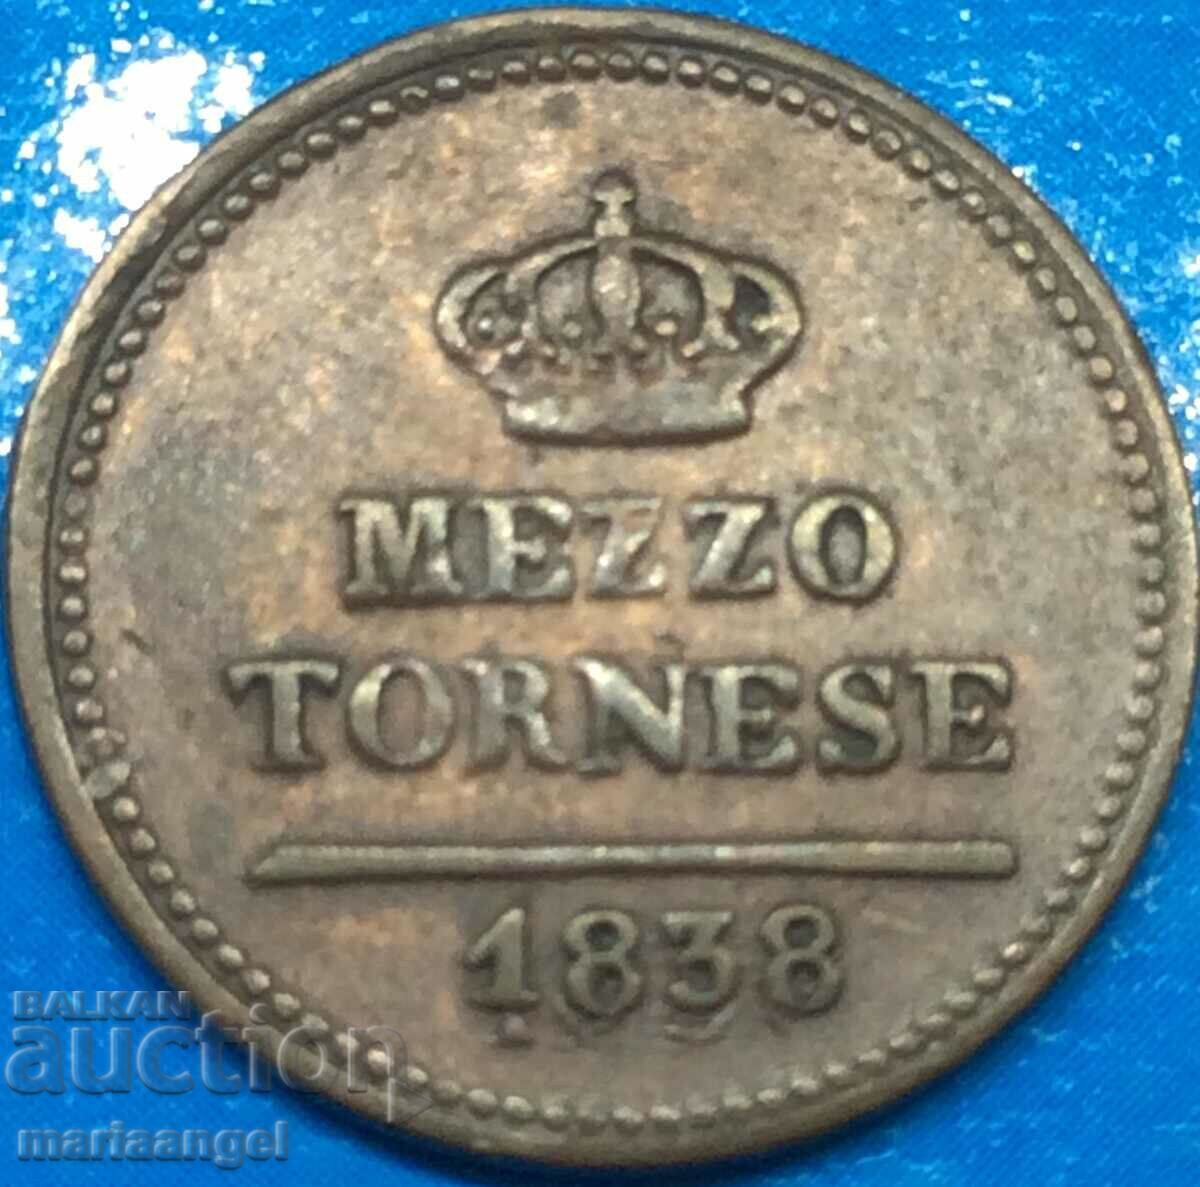 Napoli mezzo tornese 1838 Italia Ferdinand al II-lea aramă